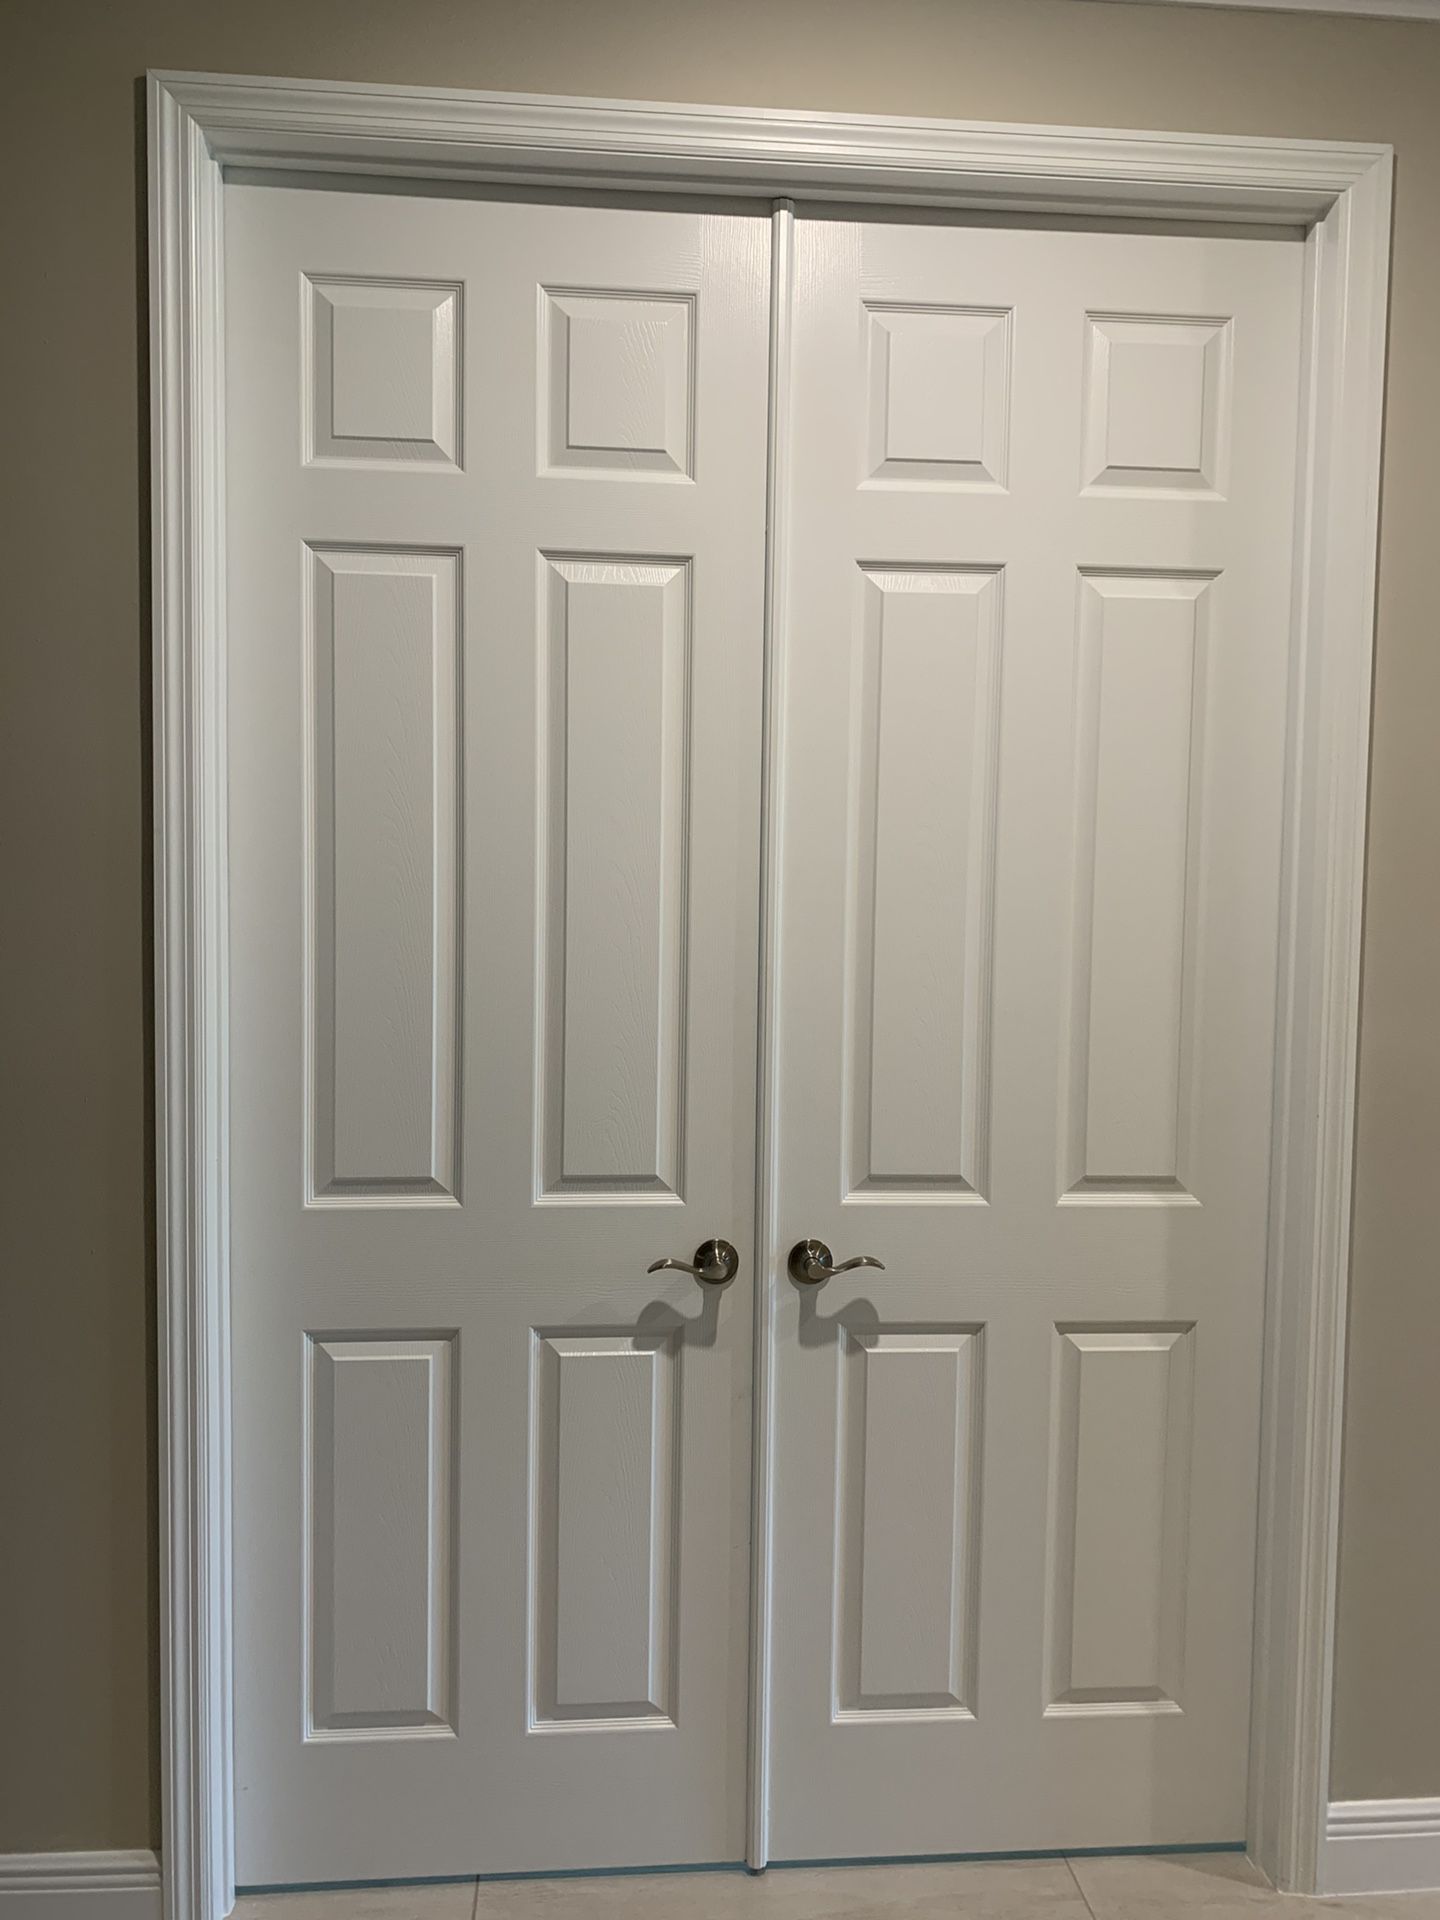 Double doors 30x96